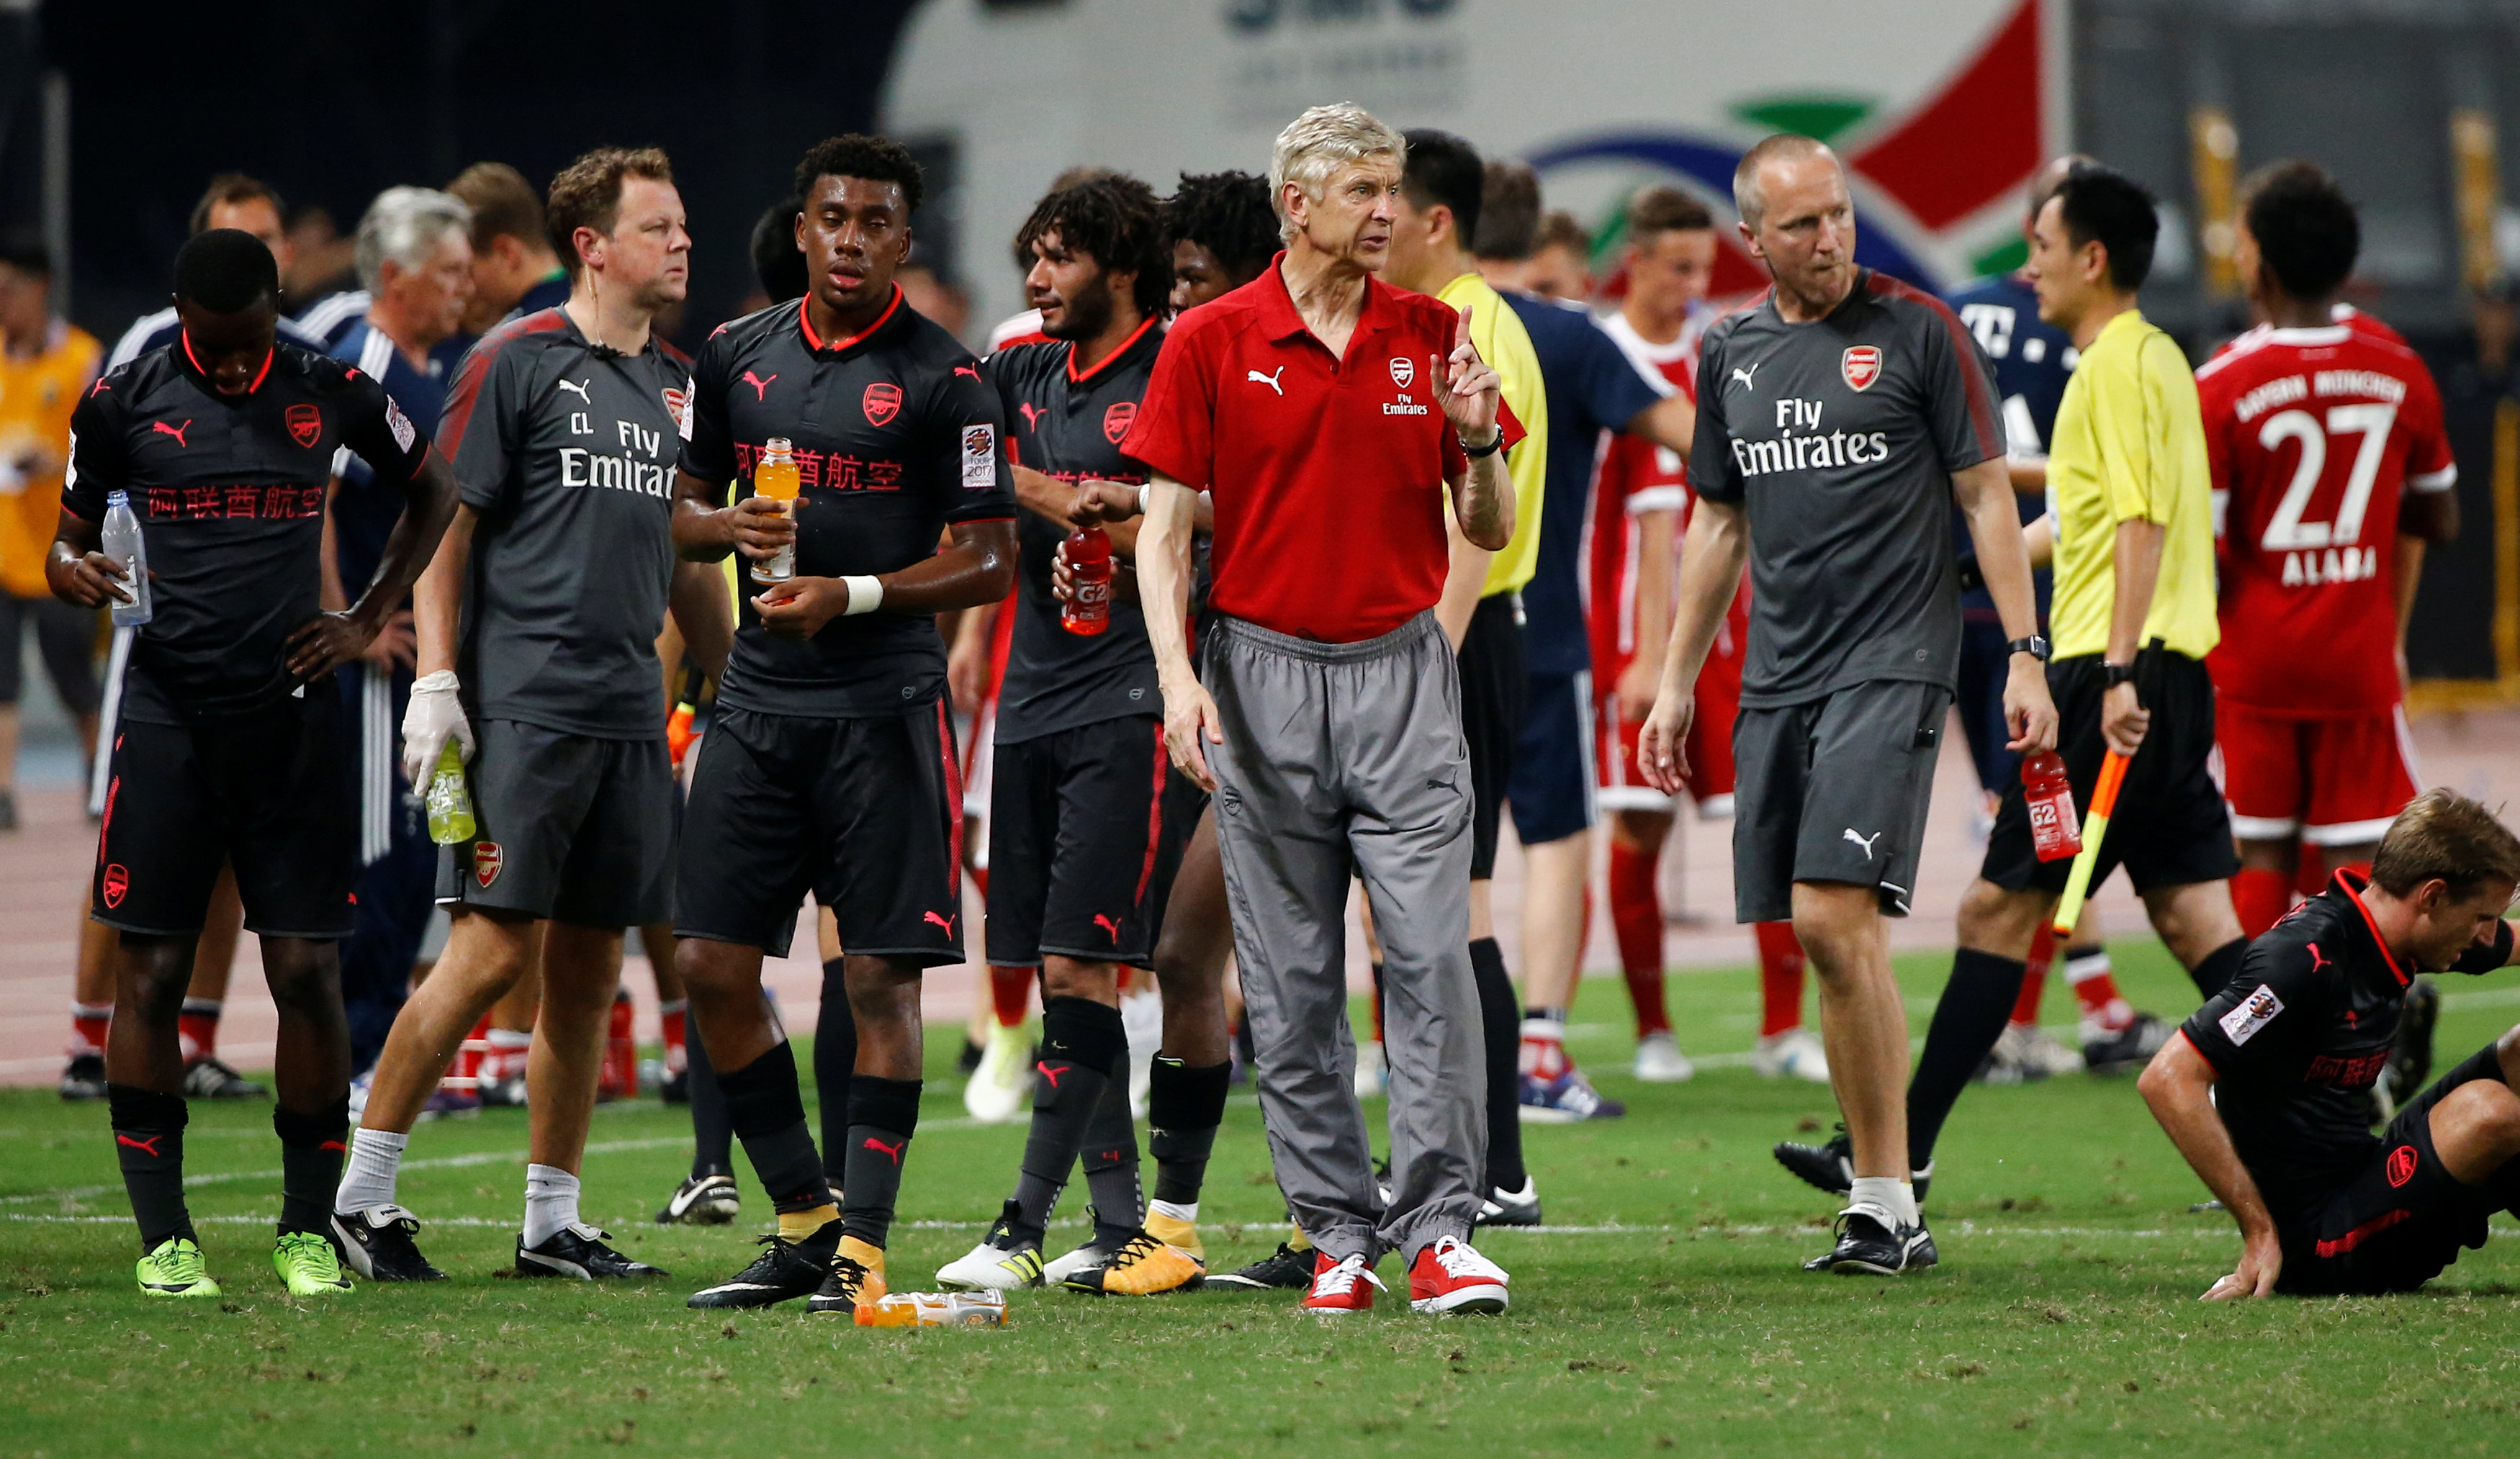 HLV Wenger (áo đỏ) khổ sở vì vụ ngộ độ thực phẩm của đội nhà ở Trung Quốc. Ảnh: REUTERS